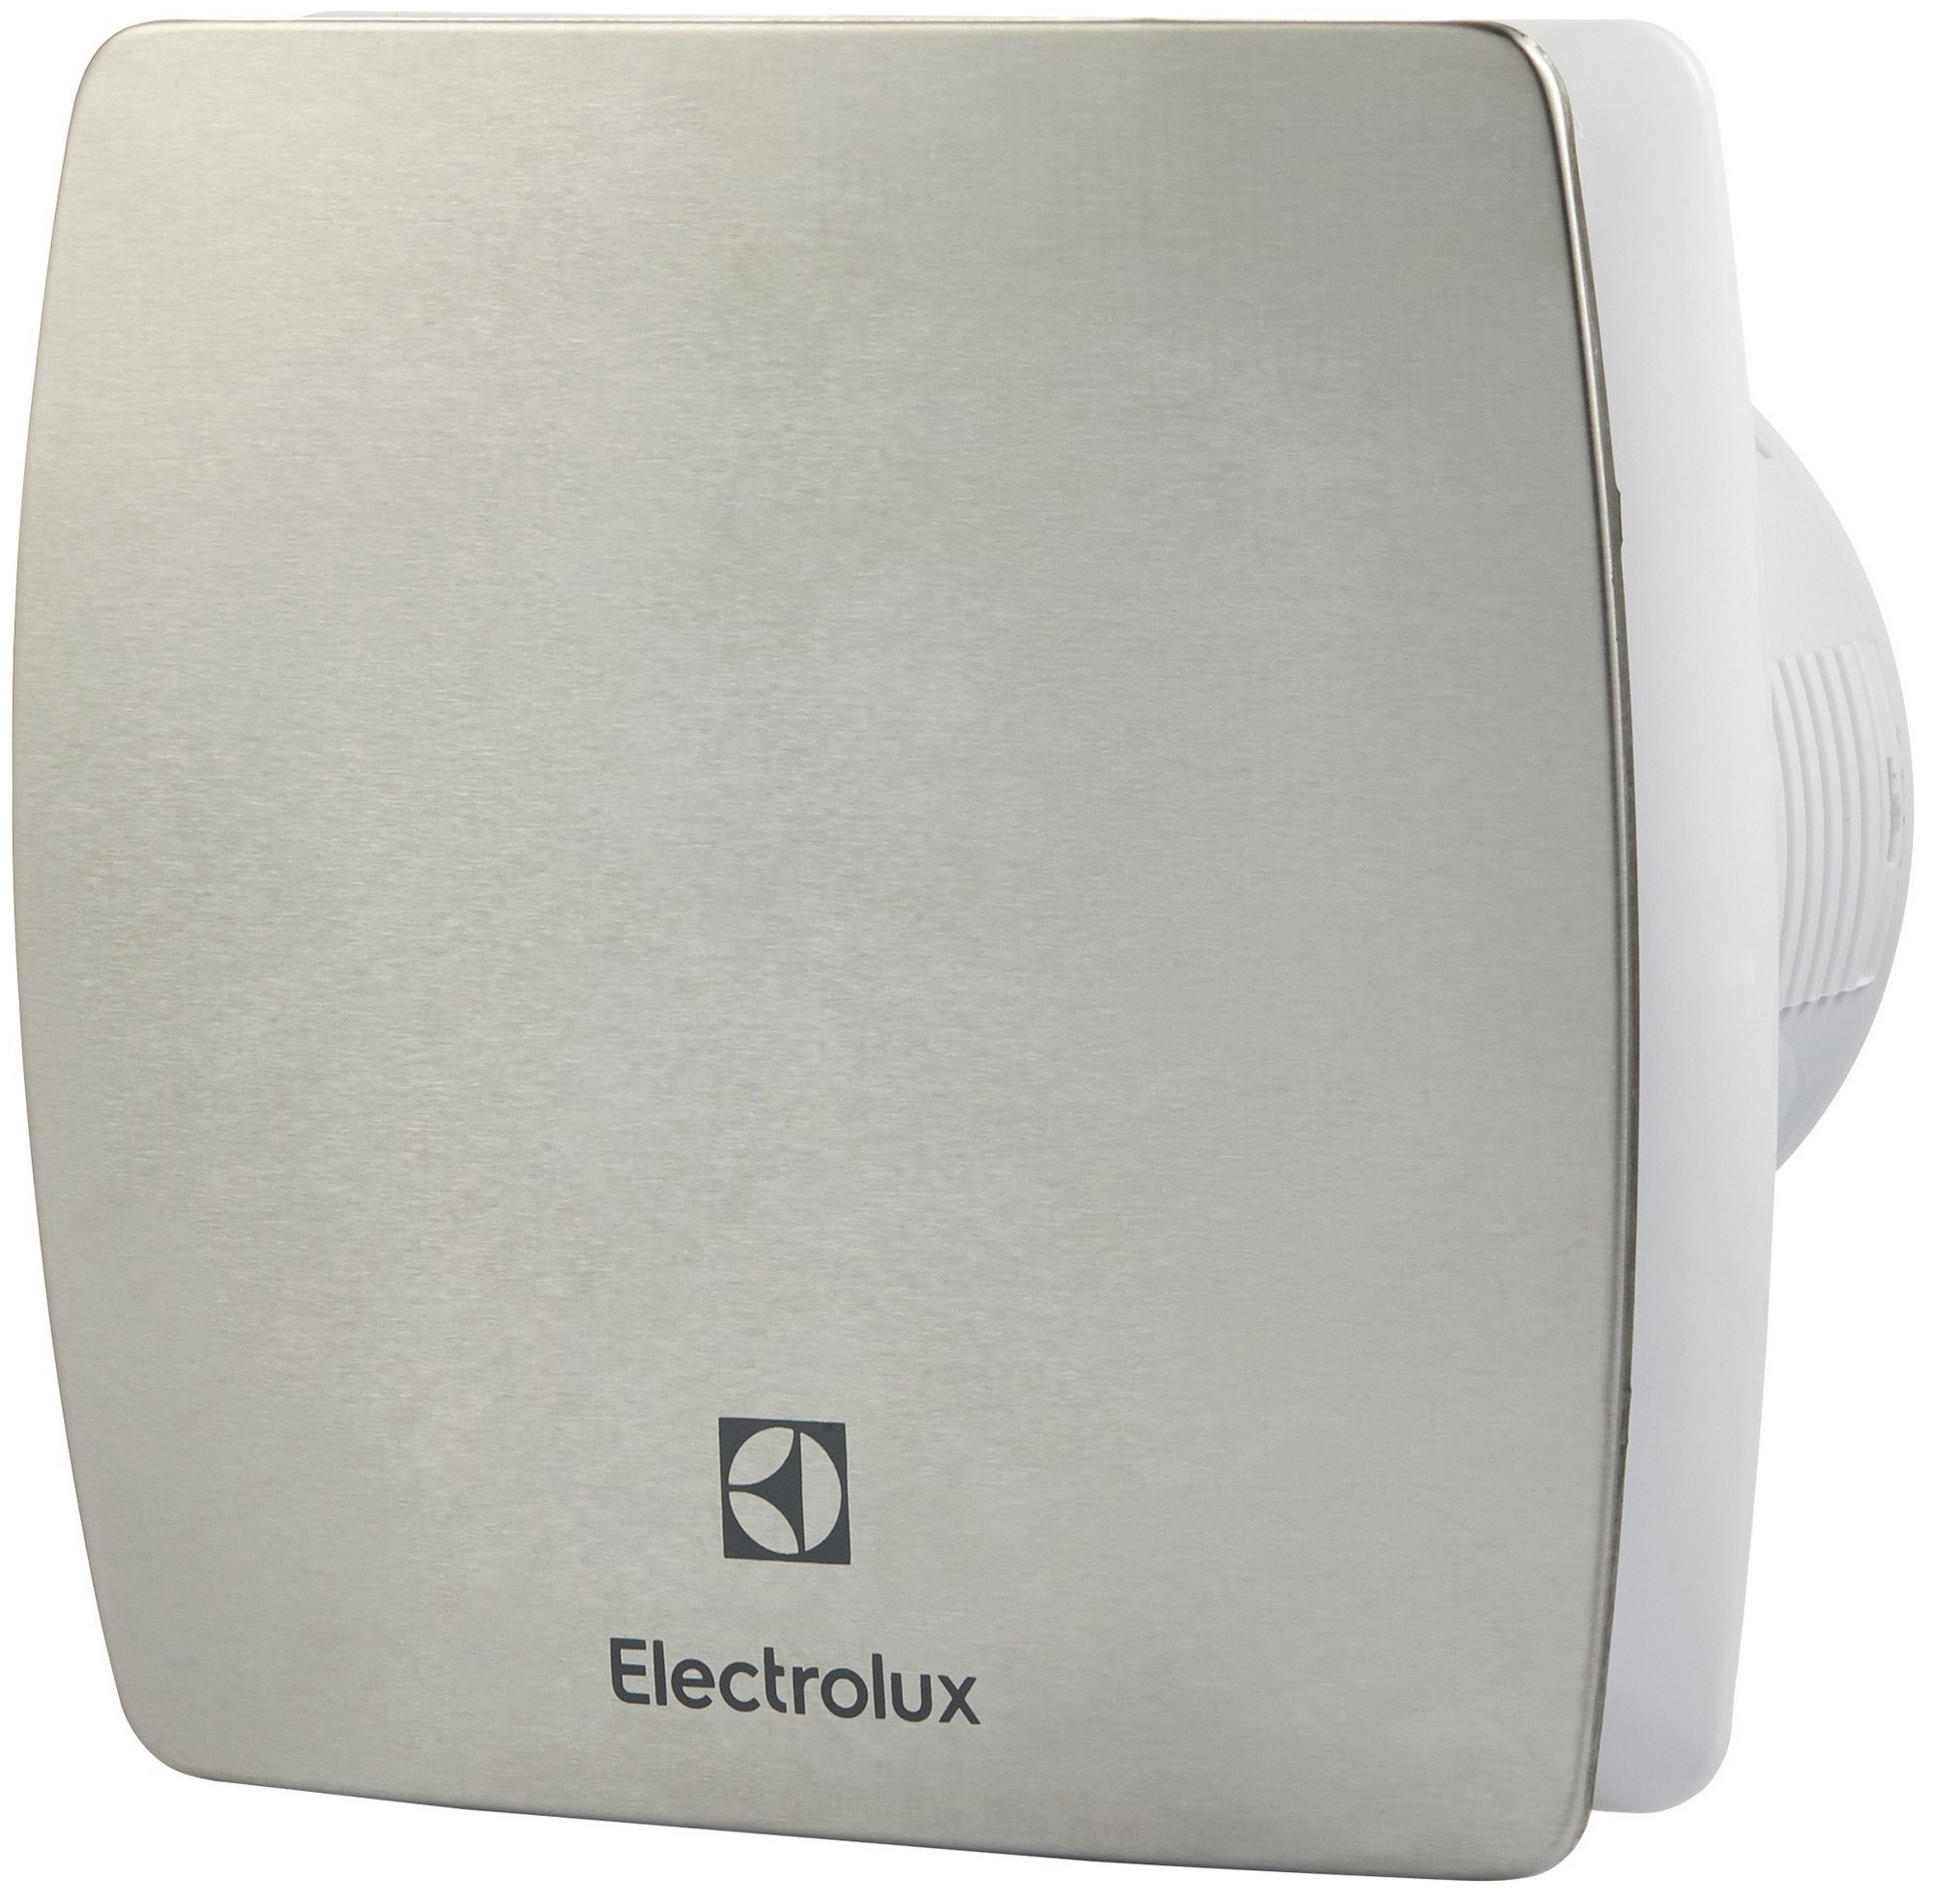 Вентилятор Electrolux з таймером вимкнення Electrolux Argentum EAFA-100T 